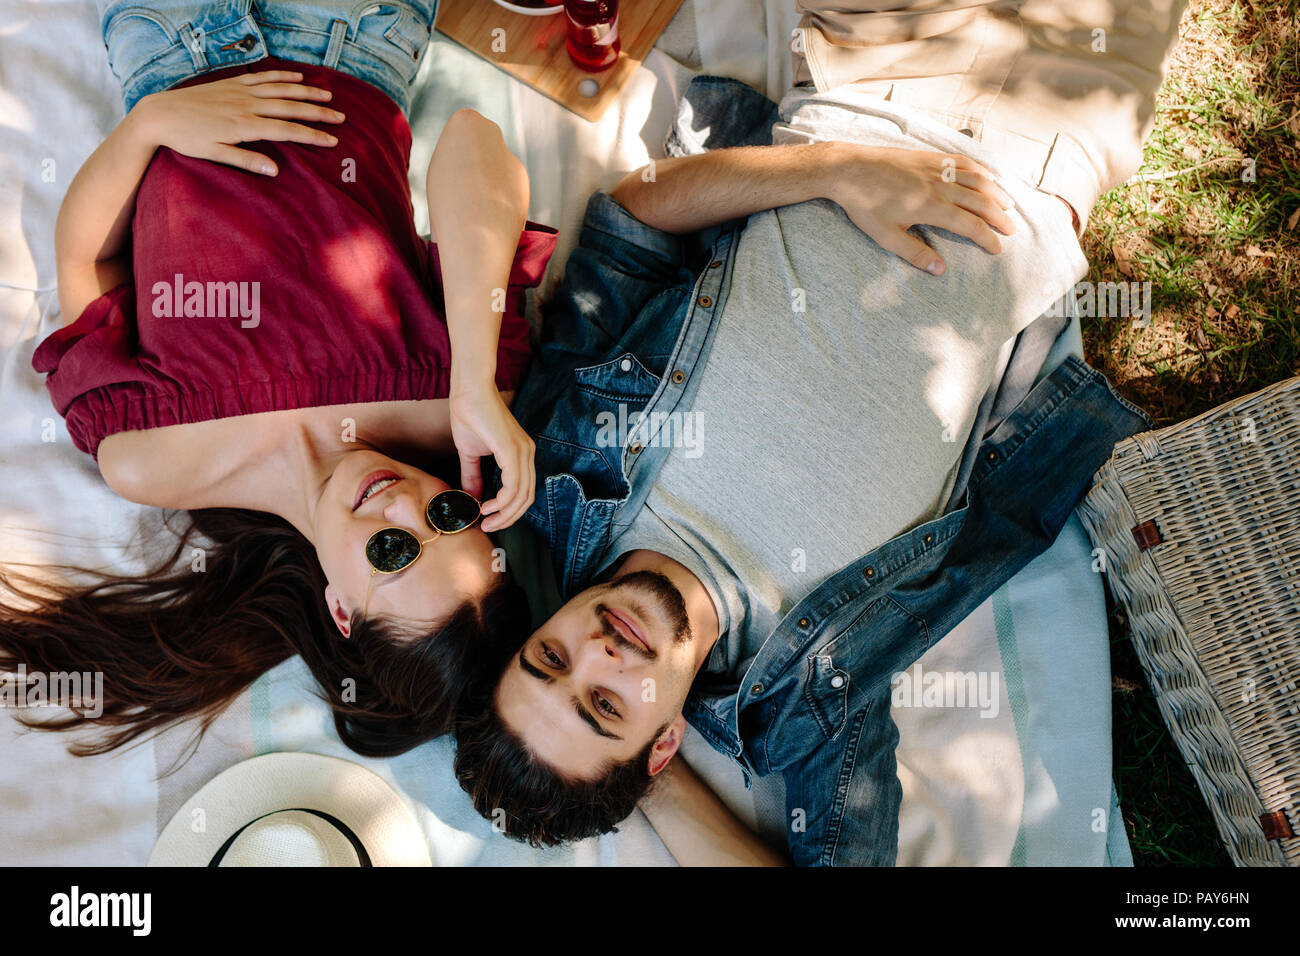 Girato dal di sopra della coppia giovane in amore giacente sulla coperta picnic. Uomo caucasico con la barba e la donna che indossa gli occhiali da sole rilassandosi insieme al parco. Foto Stock